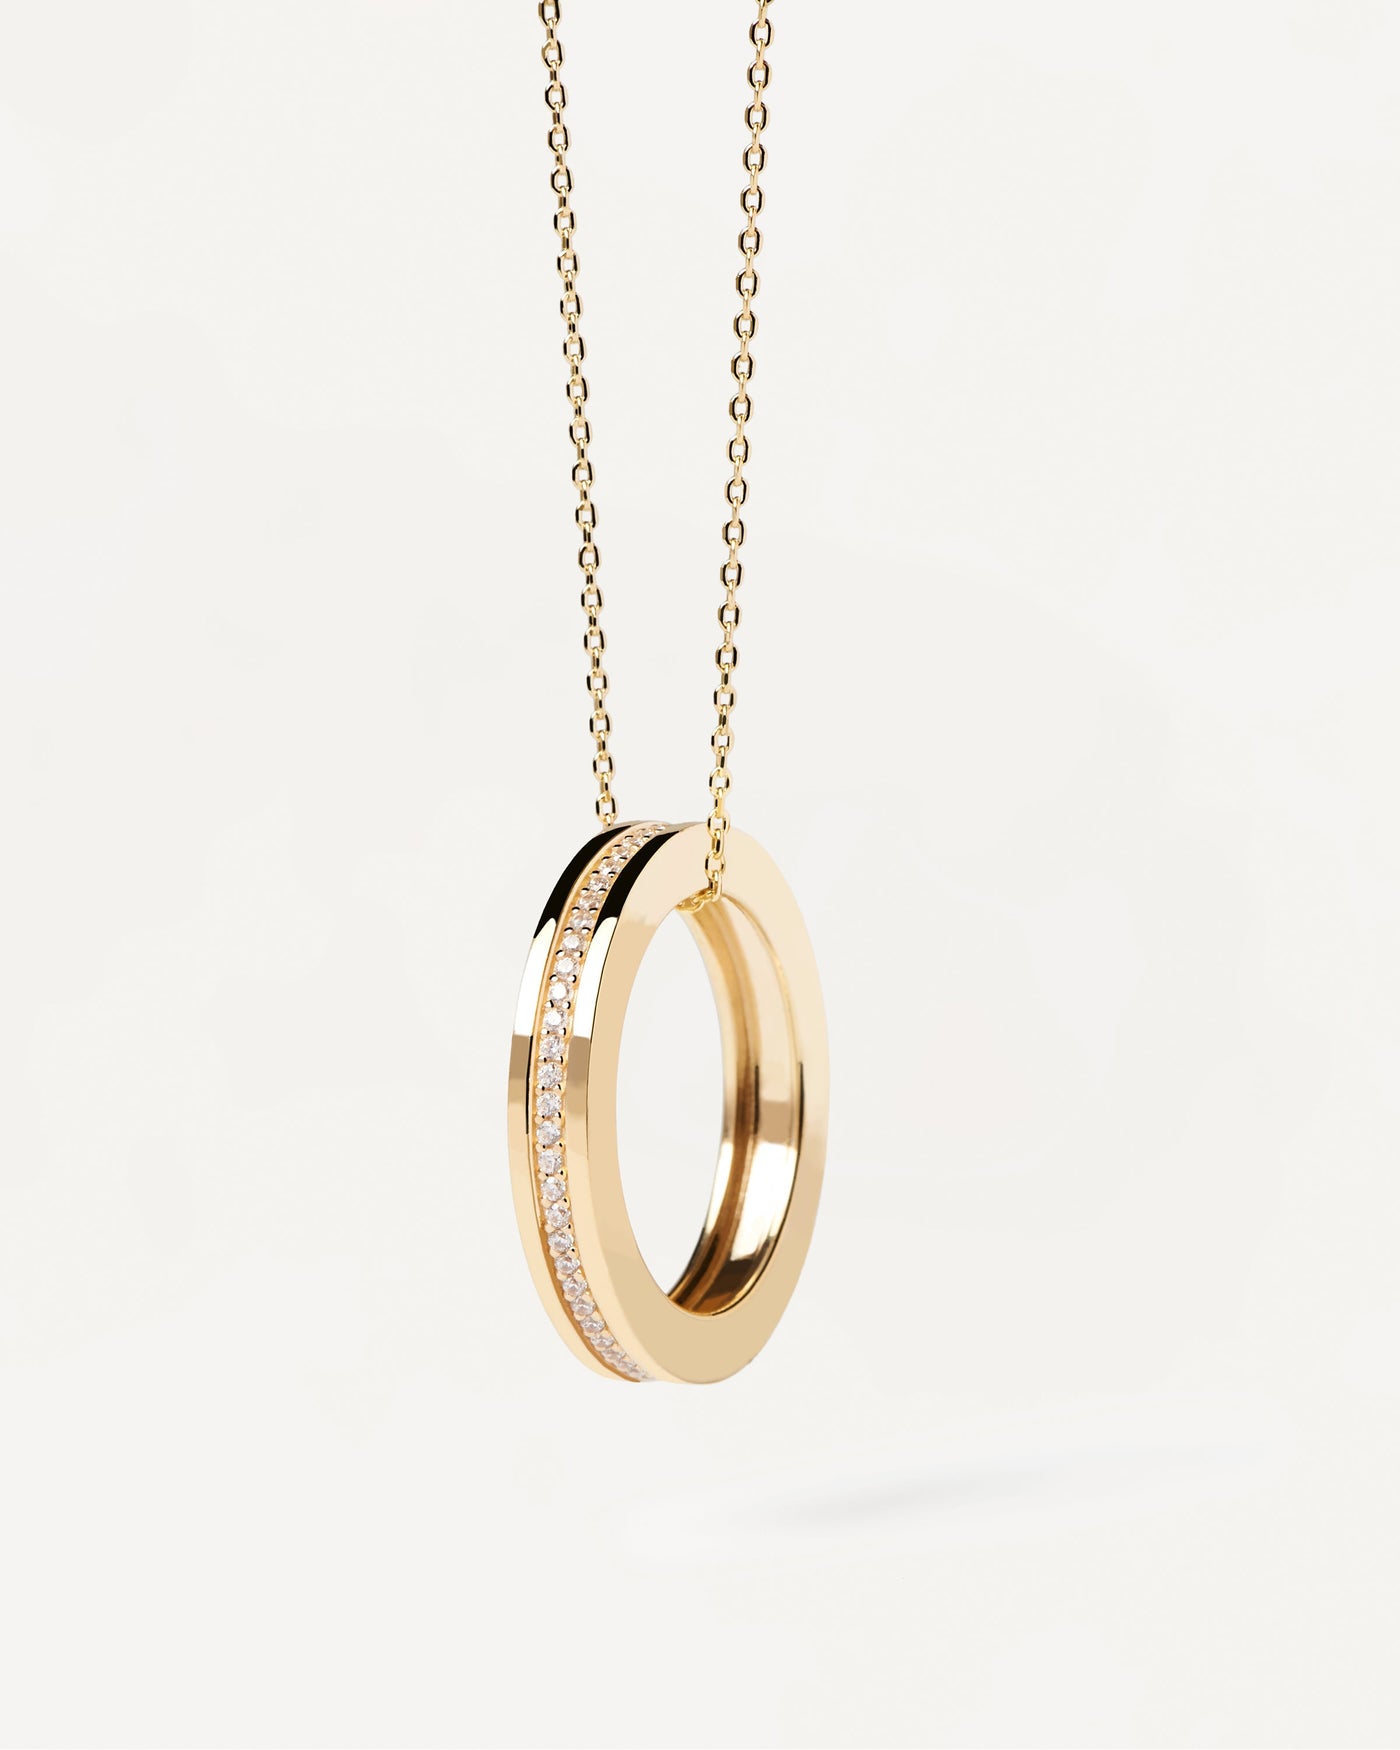 Sélection 2023 | Collier Infinity. Collier en plaqué or avec pendentif anneau serti de zircons blancs. Découvrez les dernières nouveautés de chez PDPAOLA. Commandez et recevez votre bijou en toute sérénité. Livraison gratuite.